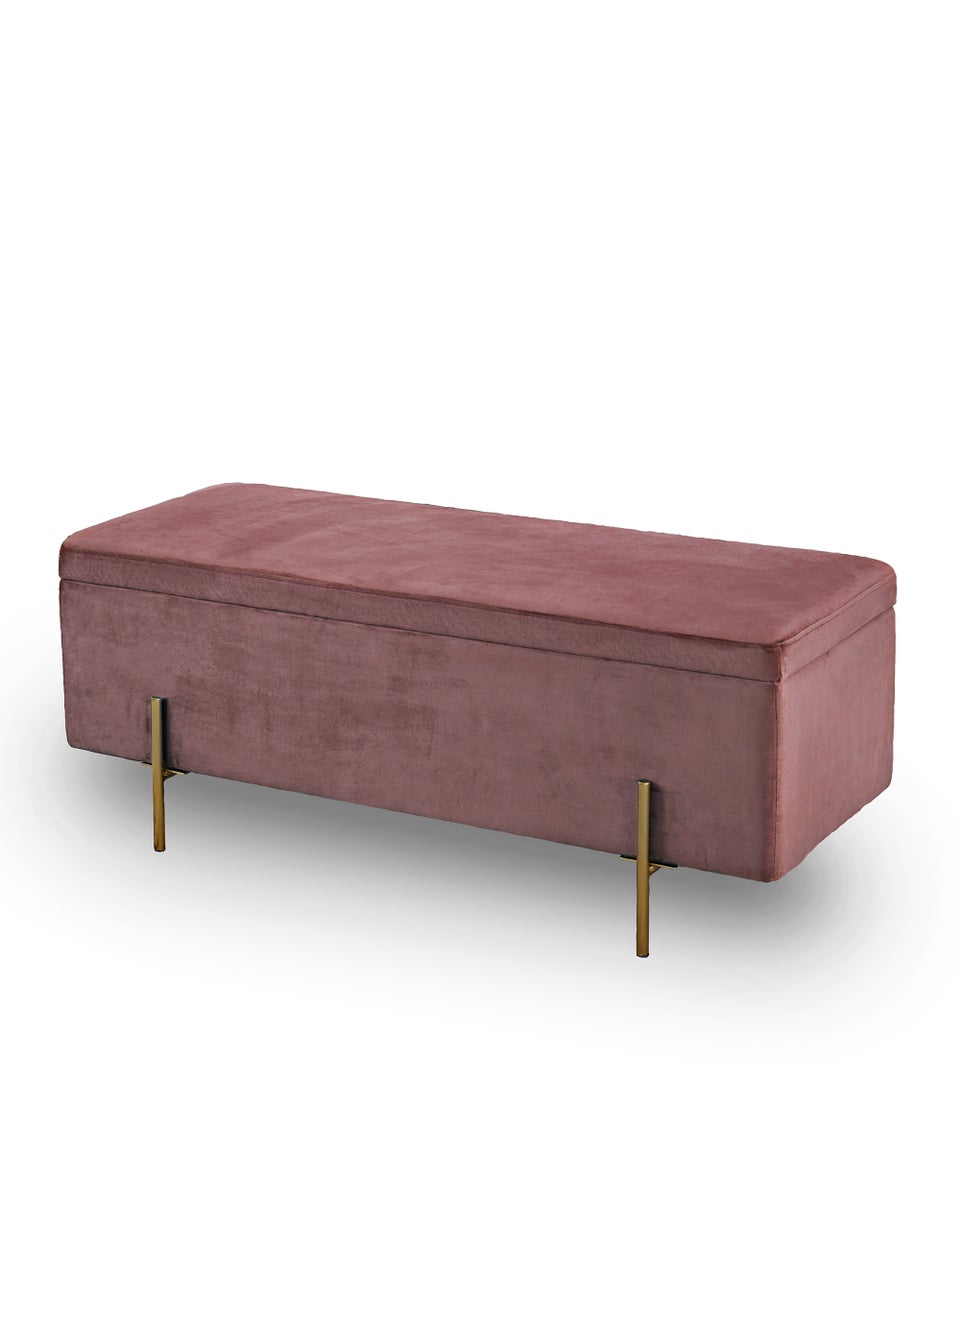 LPD Furniture Lola Storage Ottoman Pink (450x1150x450mm)